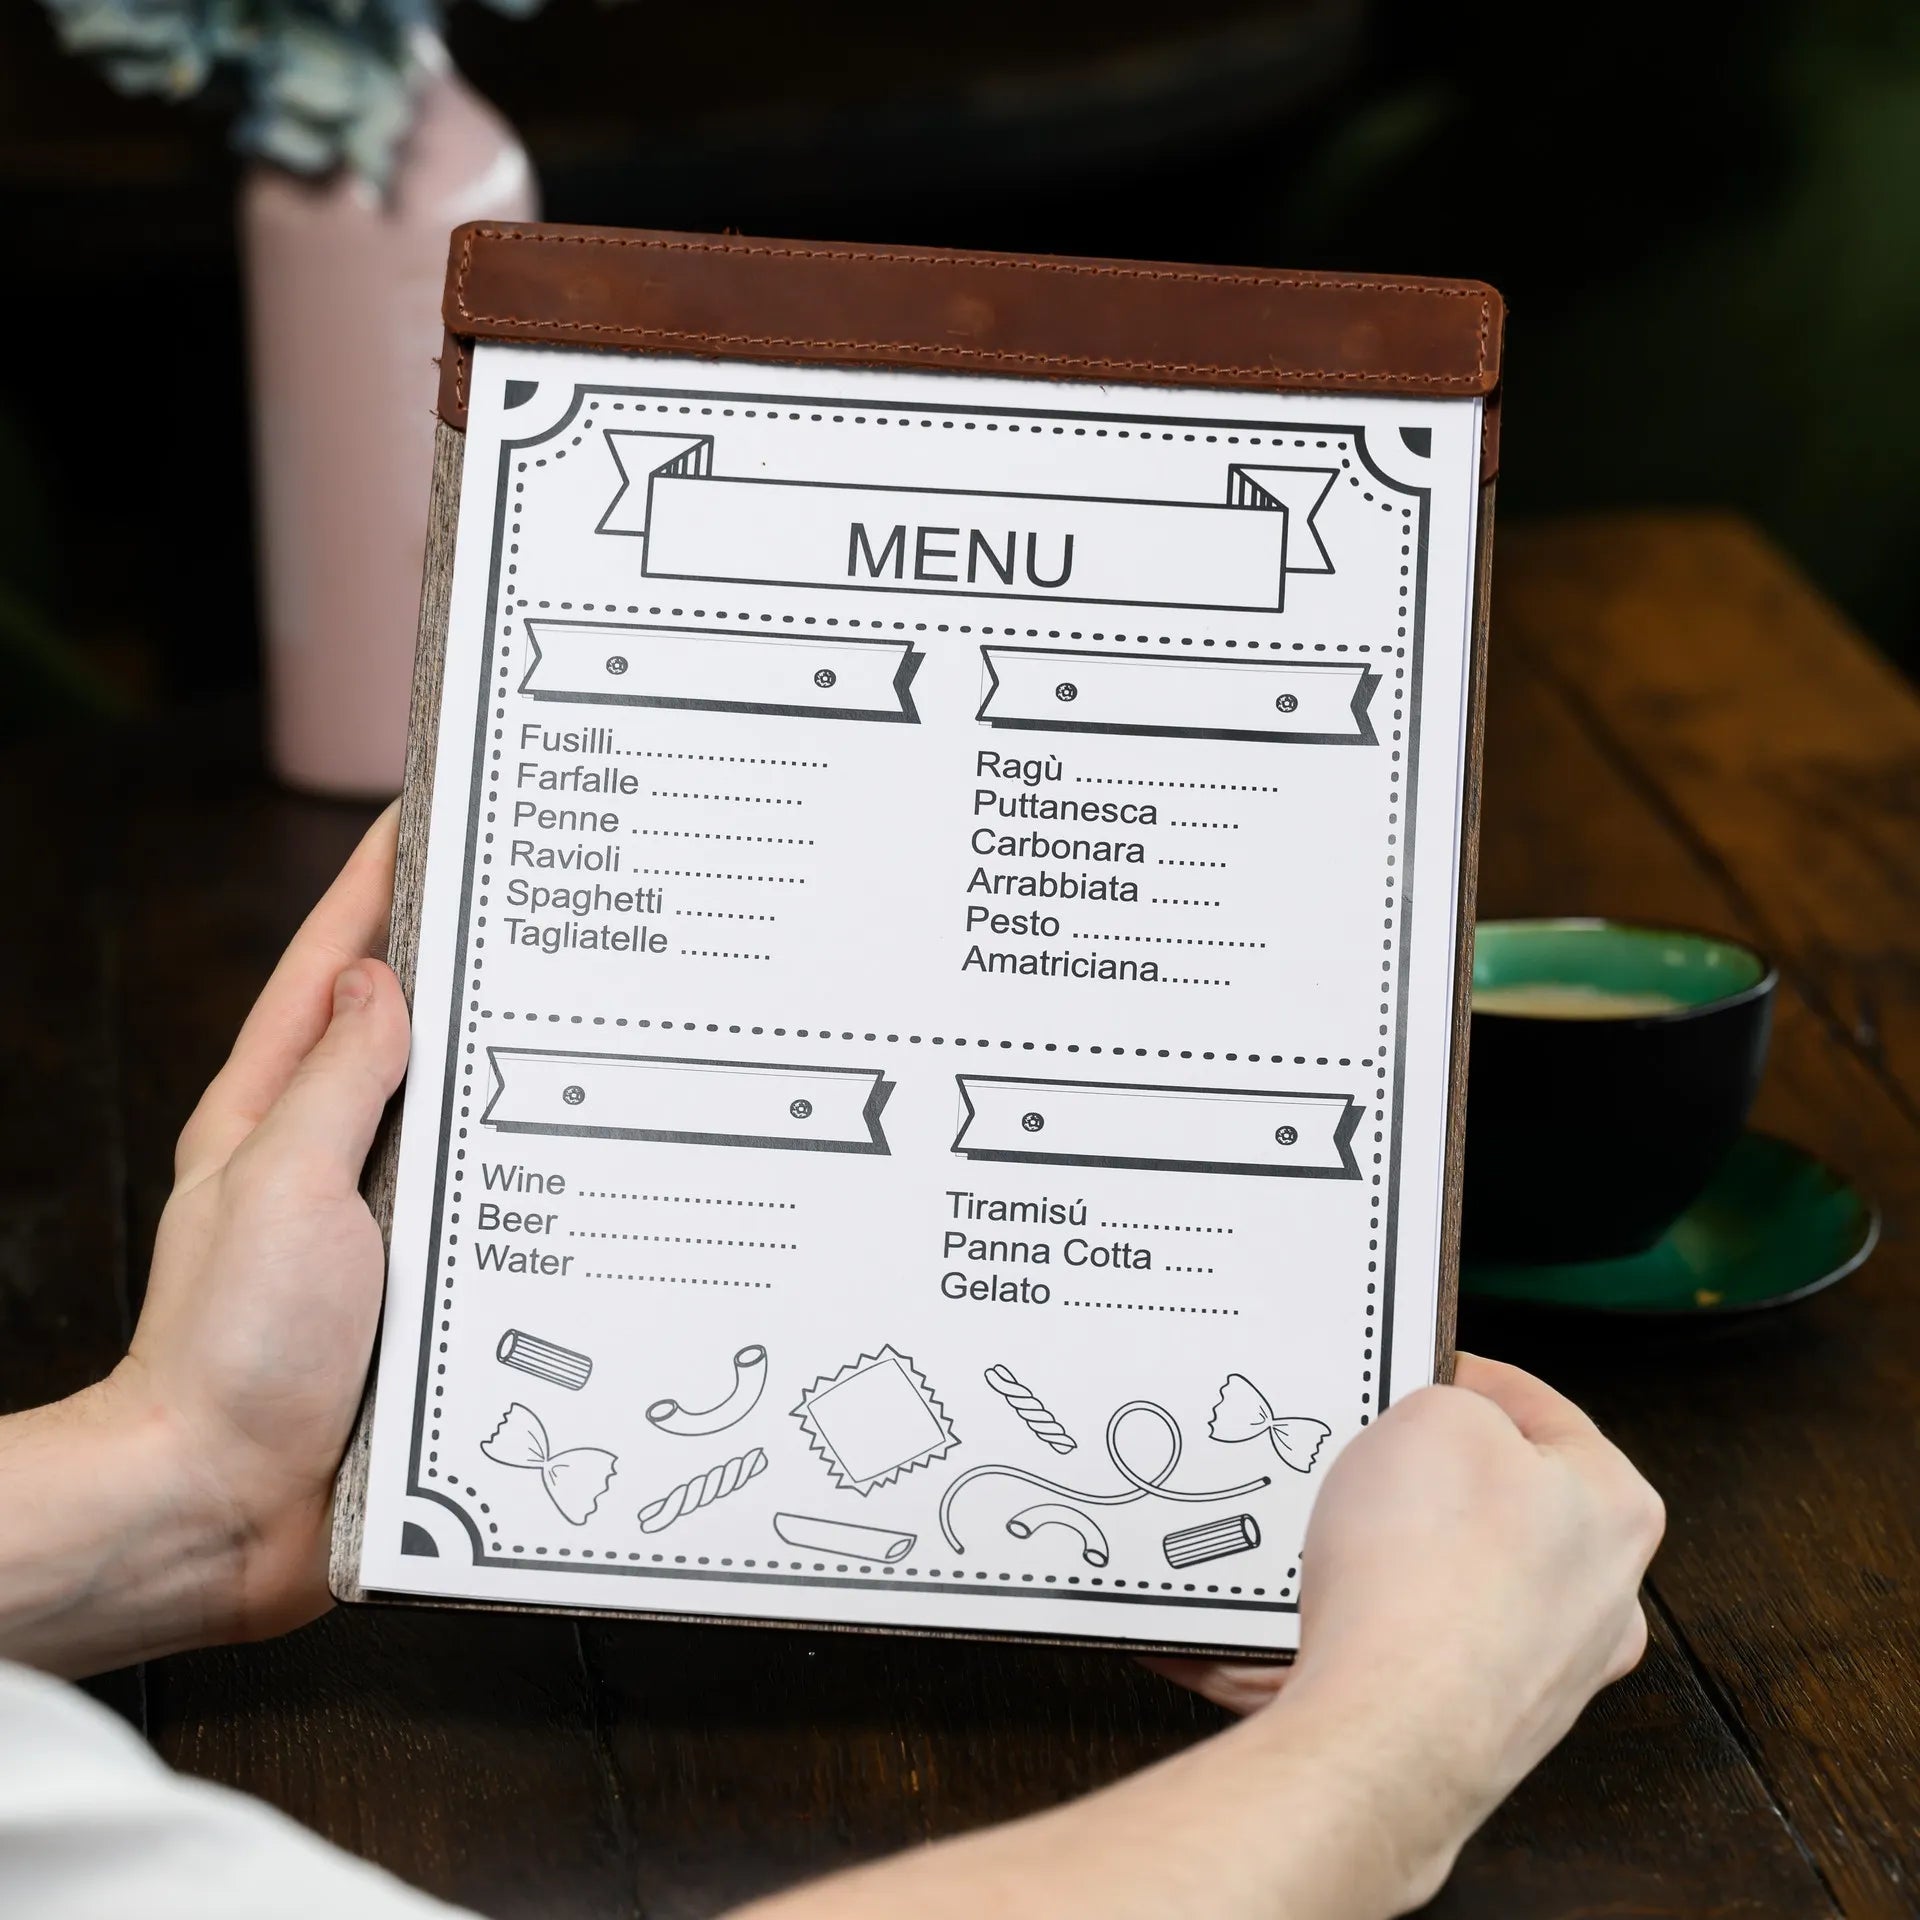 Sturdy Menu Holder: Ensures longevity in menu display.